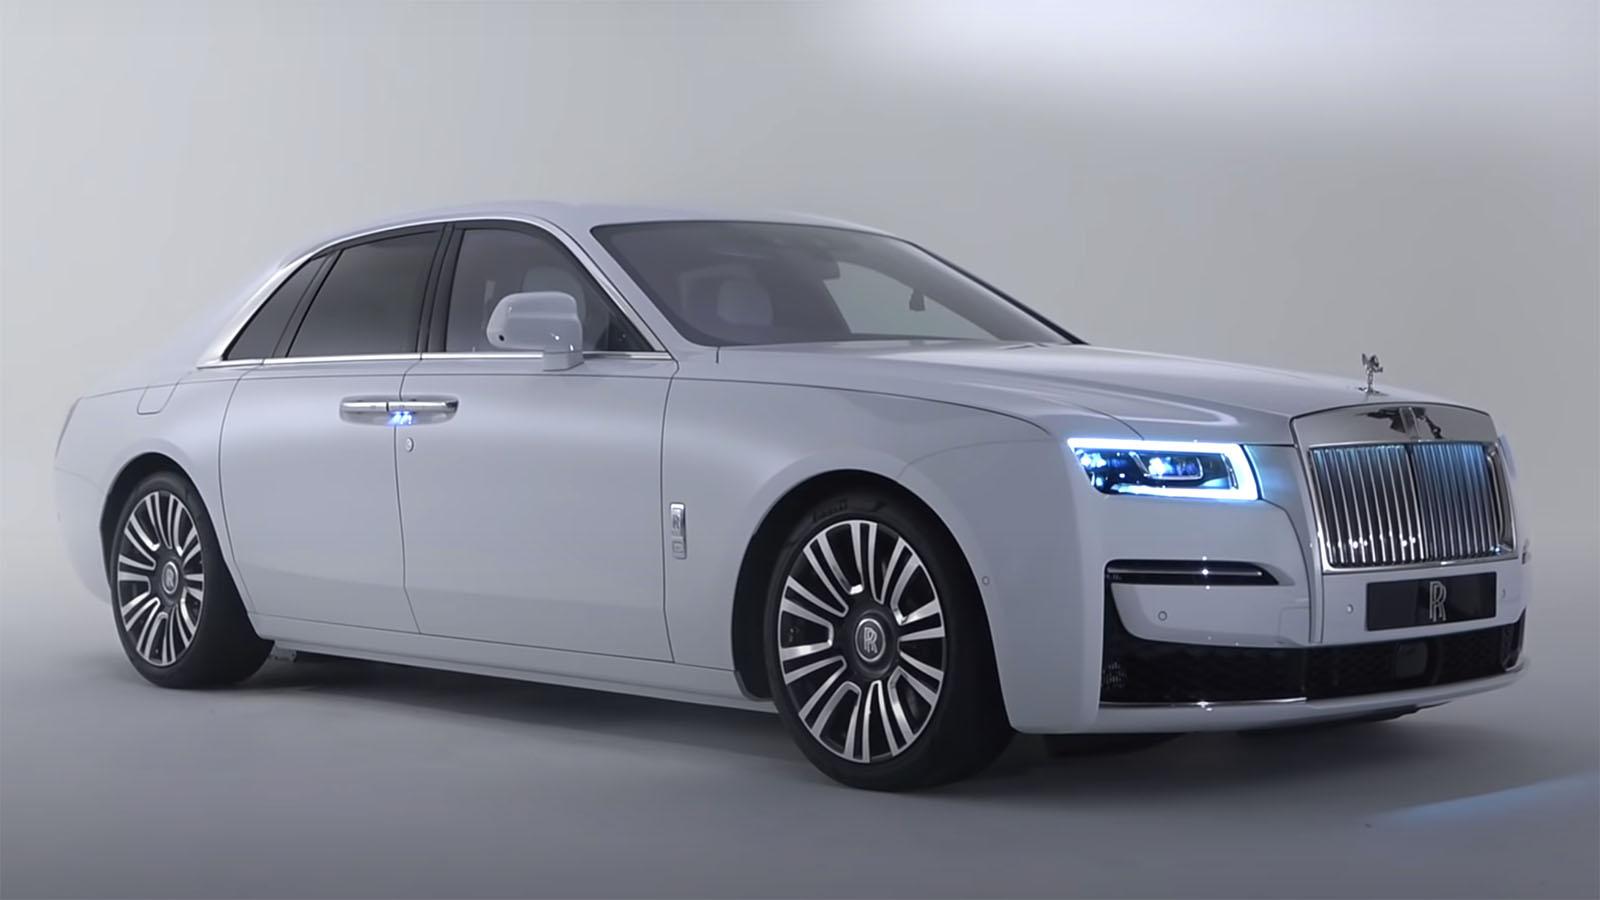 New 2021 Rolls Royce Ghost